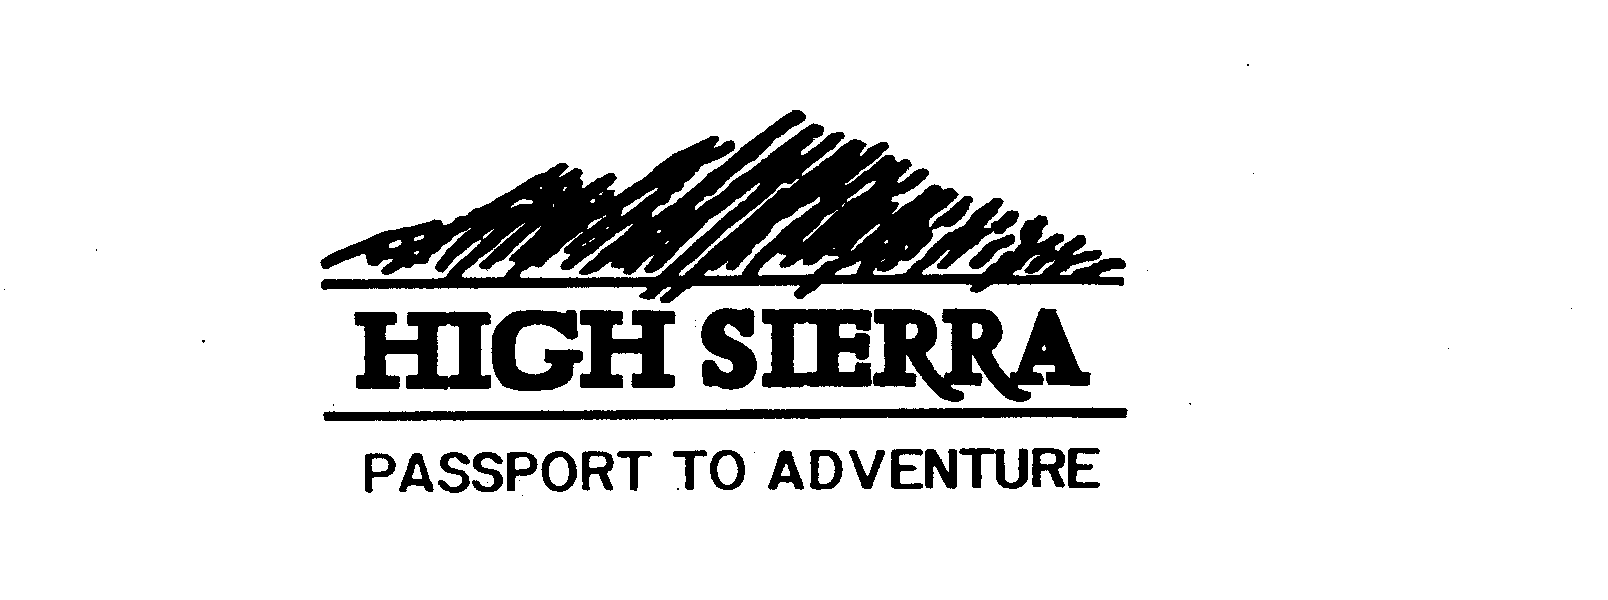  HIGH SIERRA PASSPORT TO ADVENTURE